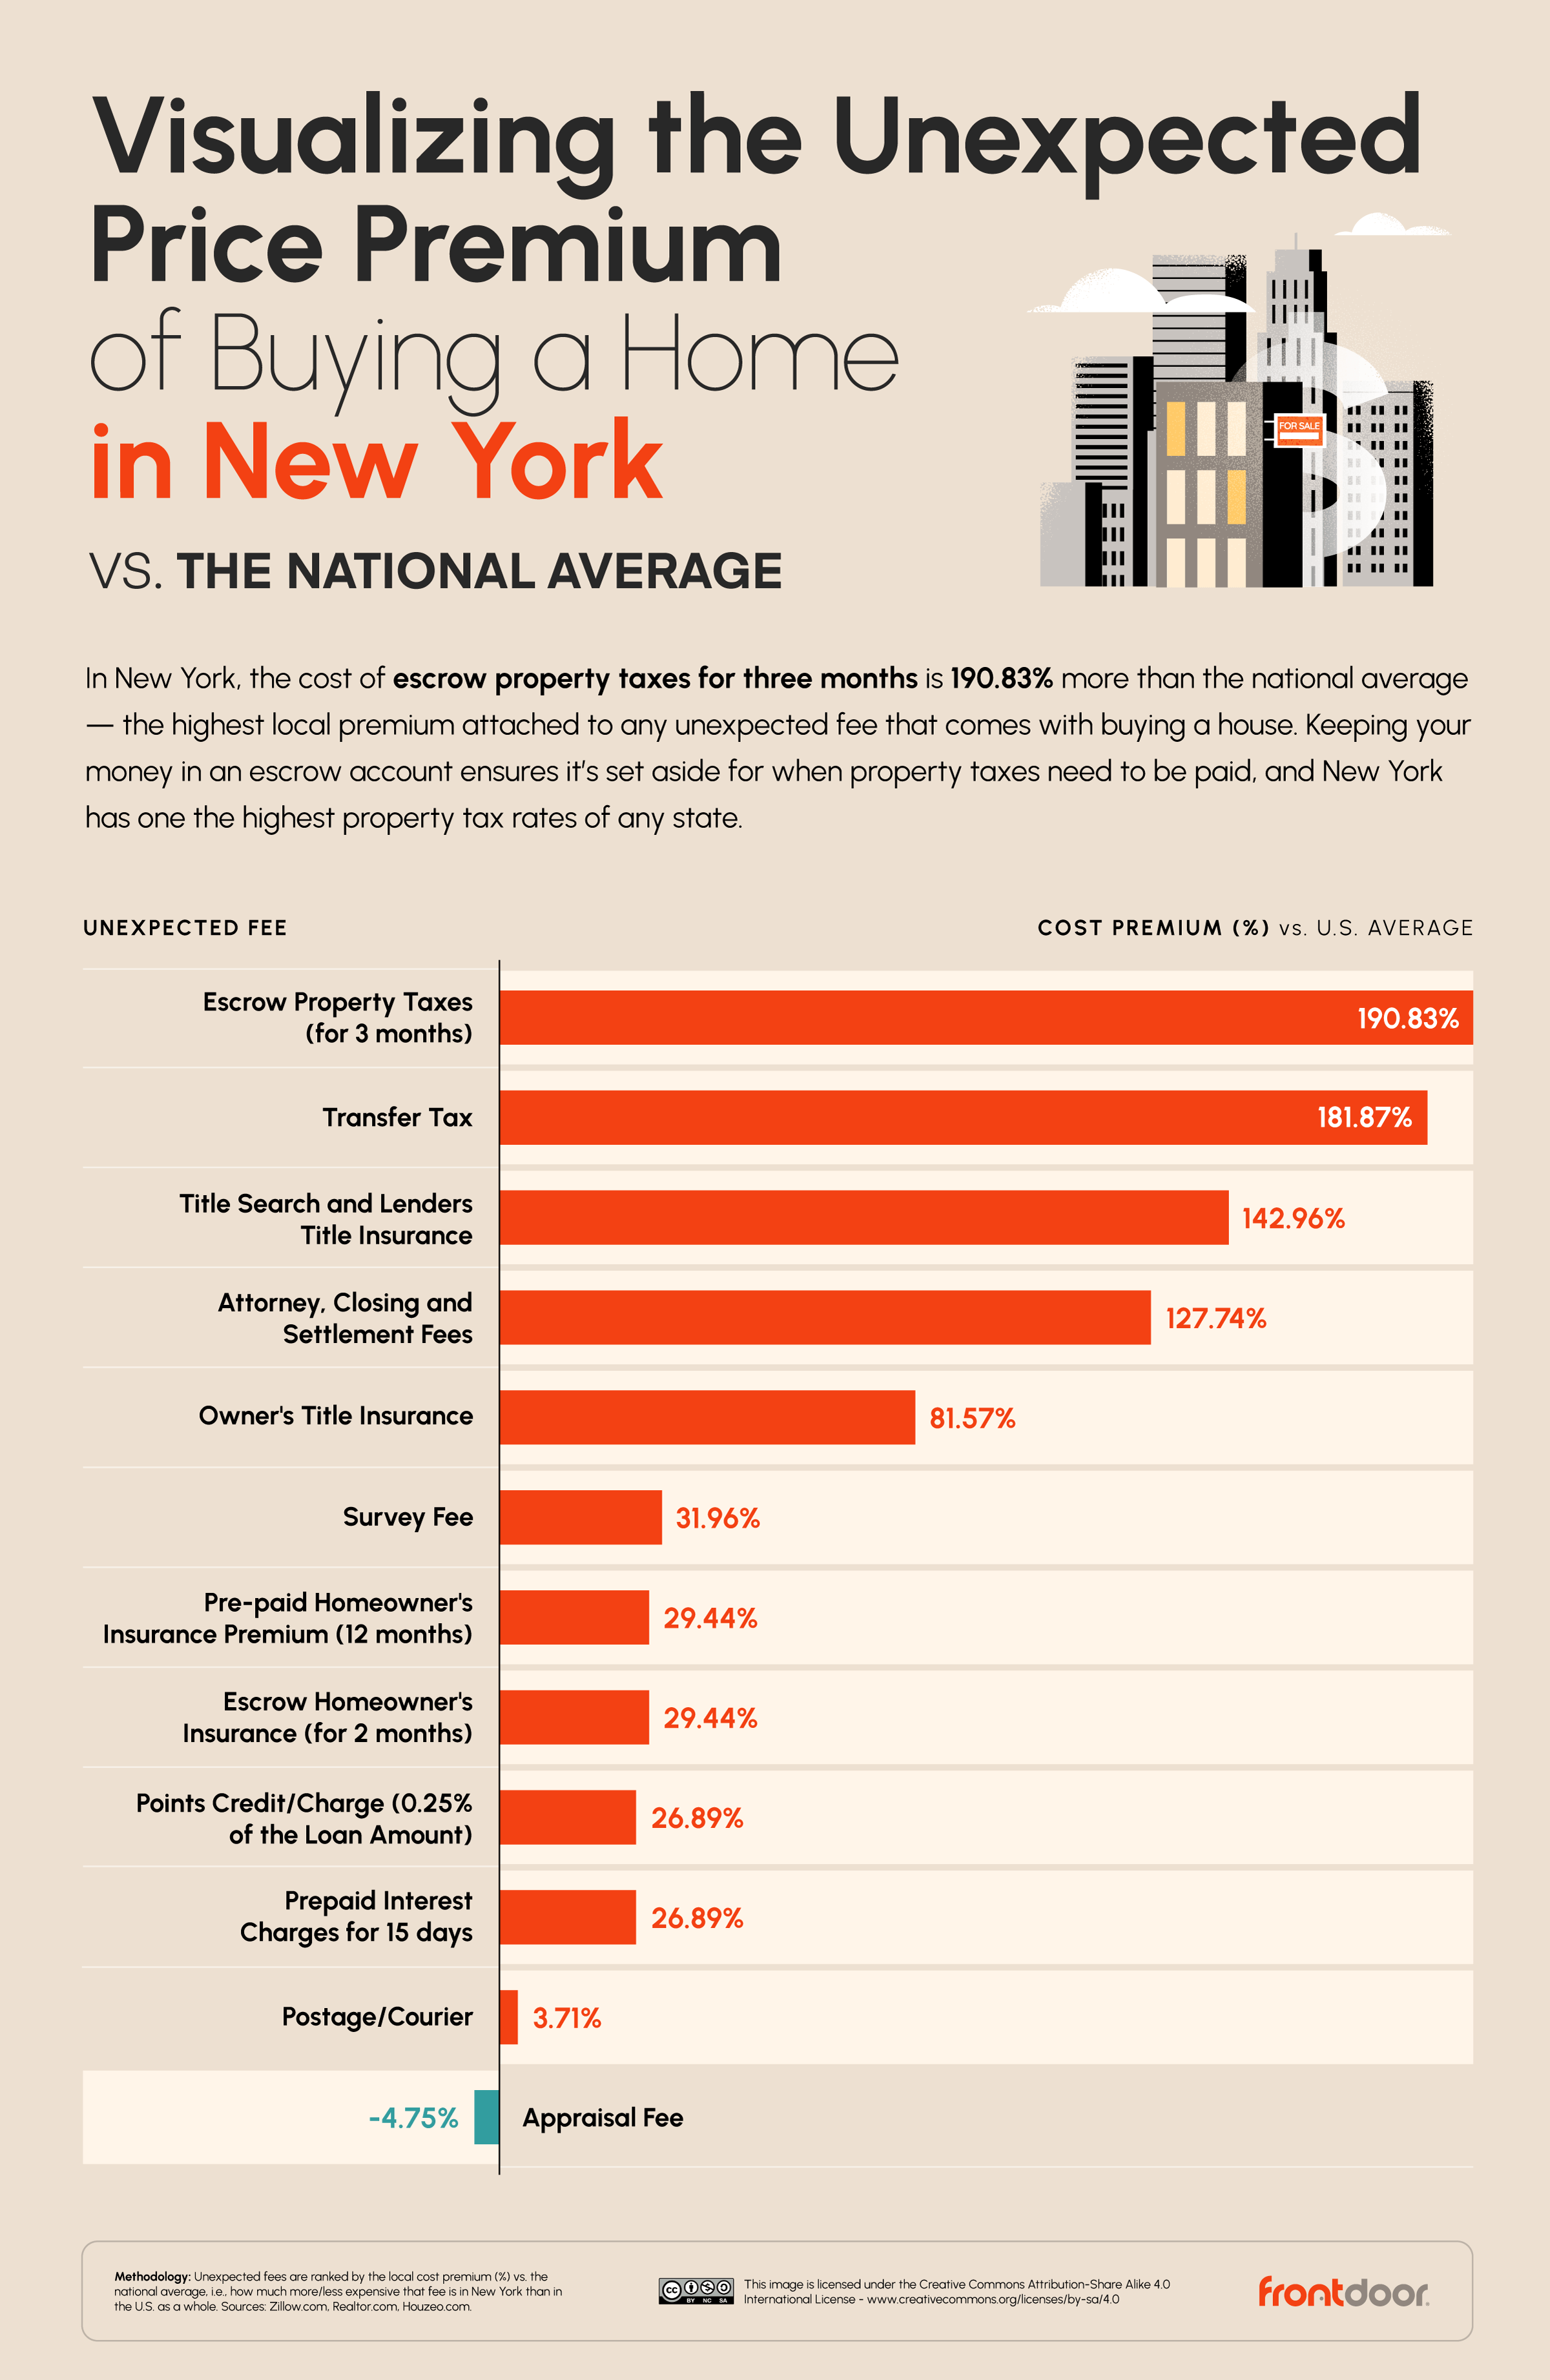  Unexpected Hidden Home Buyer Fees in New York